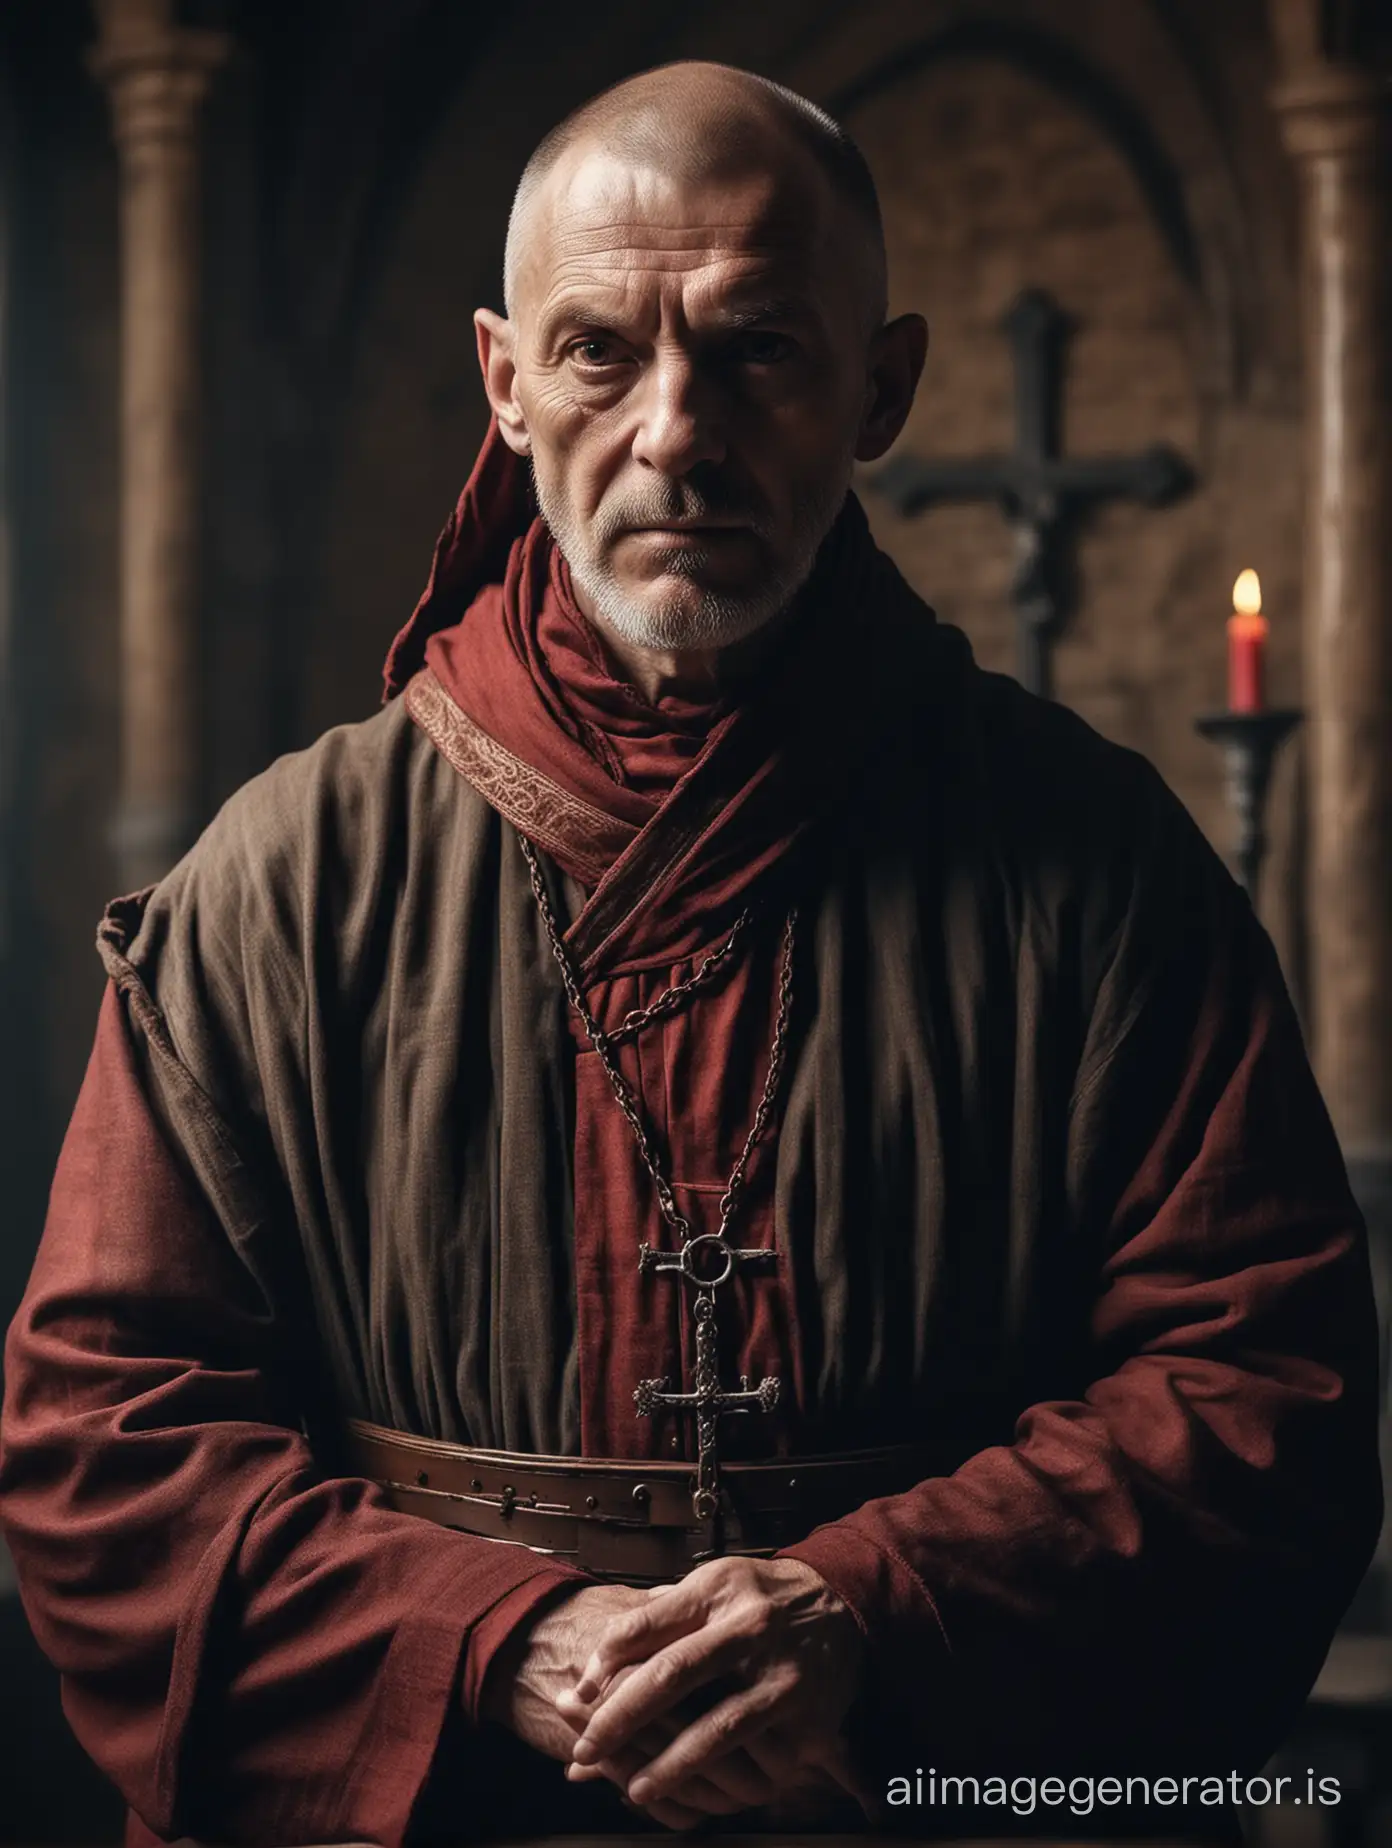 
portrait d'un moine inquisiteur de 60 ans, dans un monastère au moyen âge. sanguinaire et spécialisé dans la torture, dans le style du film LE NOM DE LA ROSE